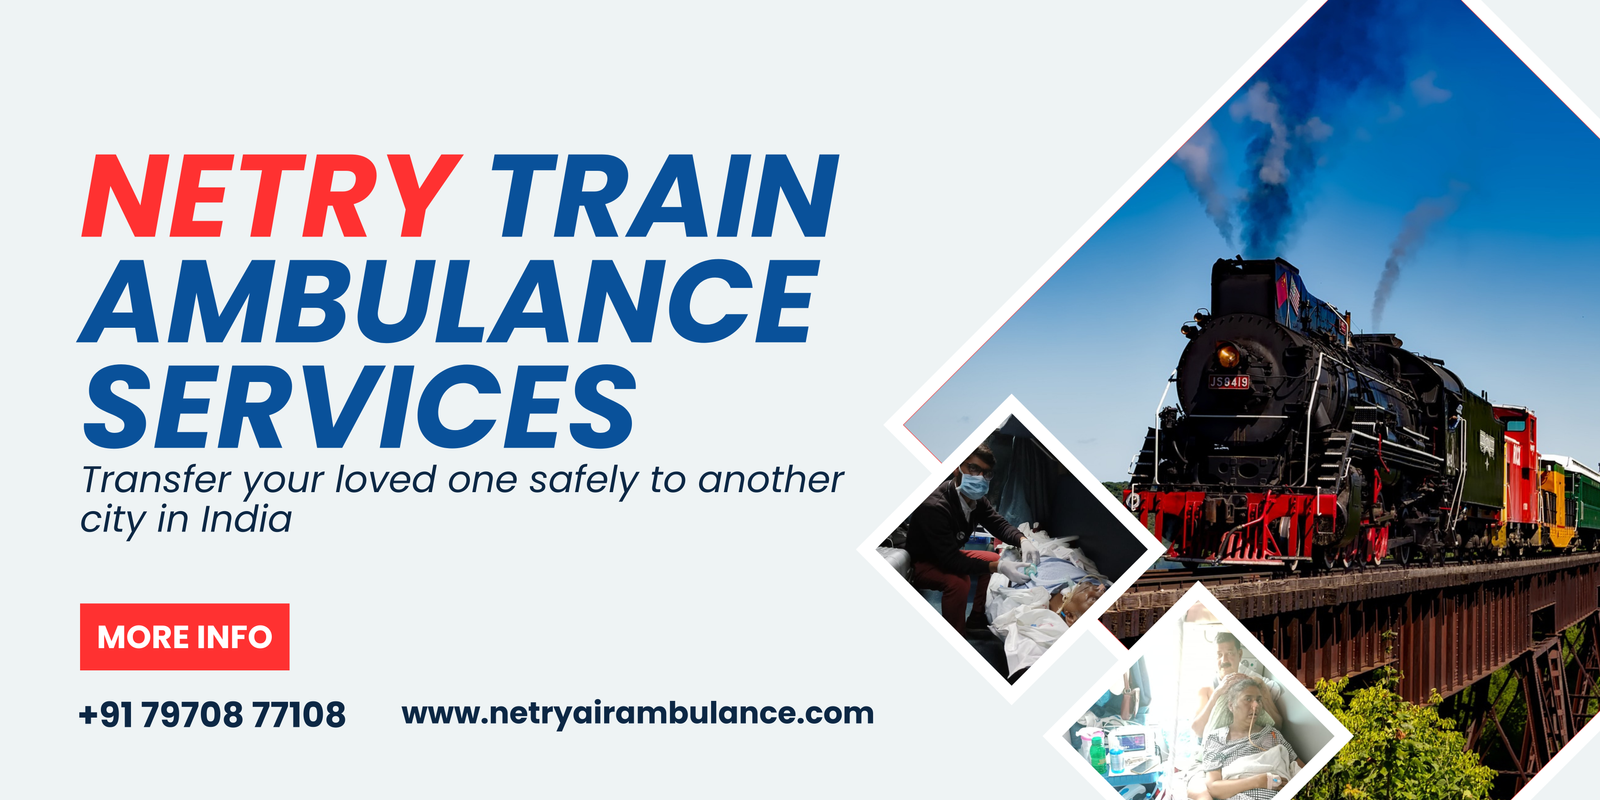 netry-train-ambulance